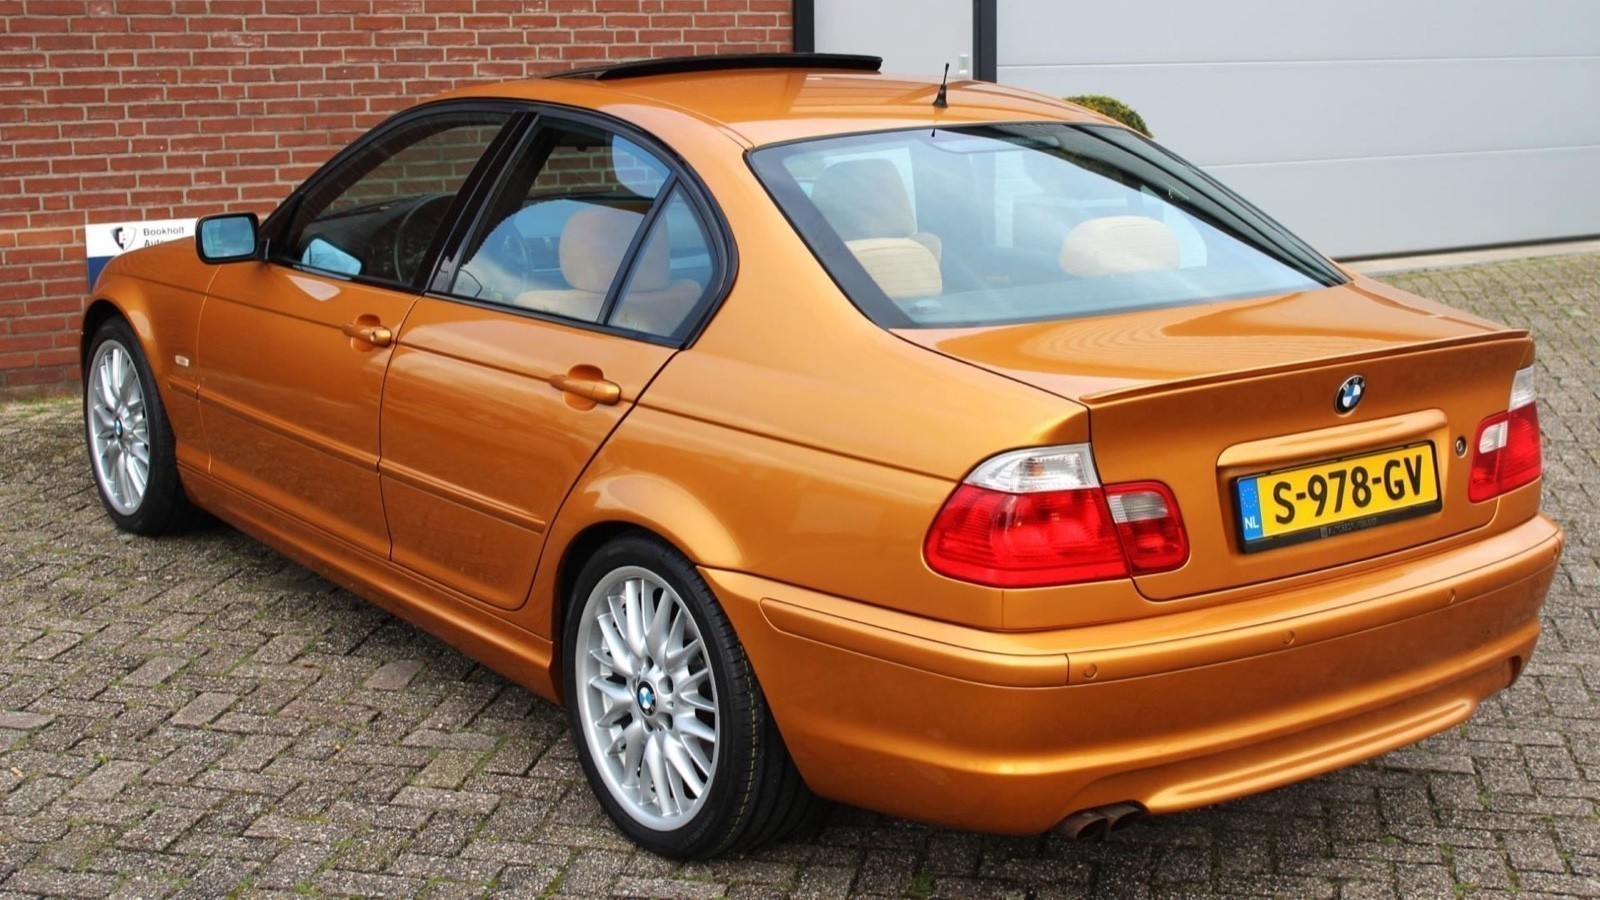 Koop deze bijzondere oranje BMW 323i Individual voor weinig